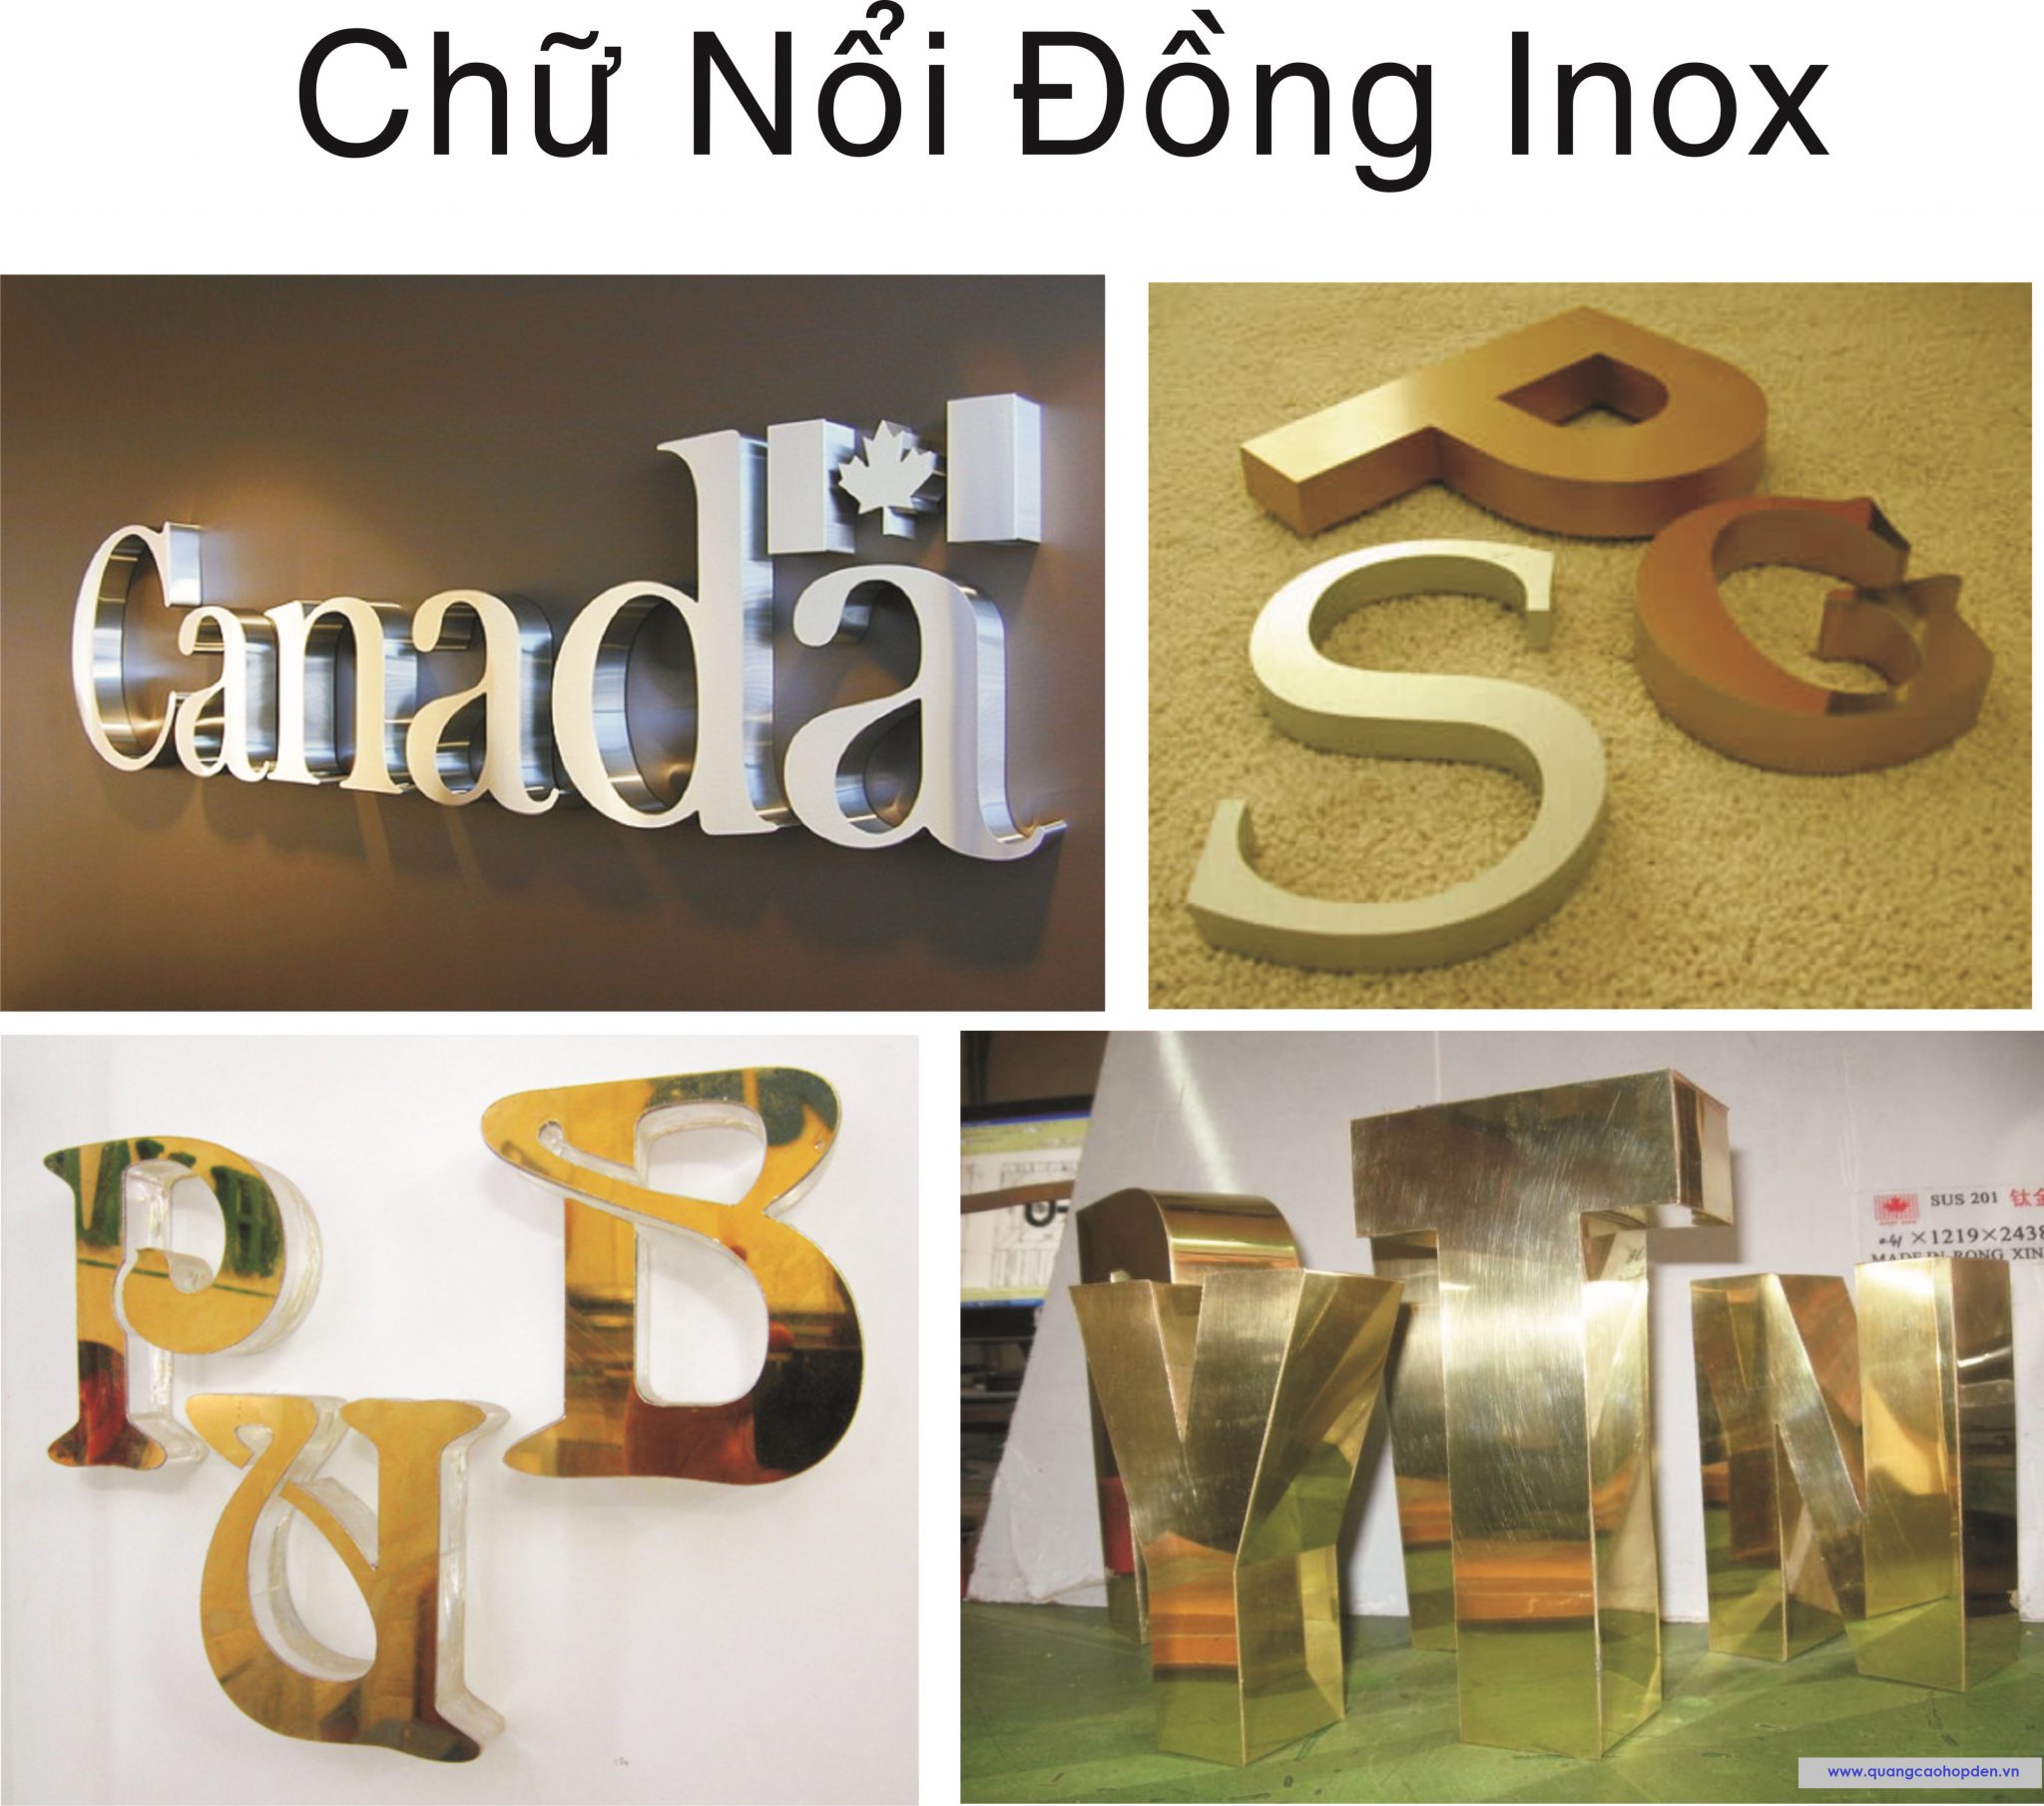 chu-noi-dong-inox